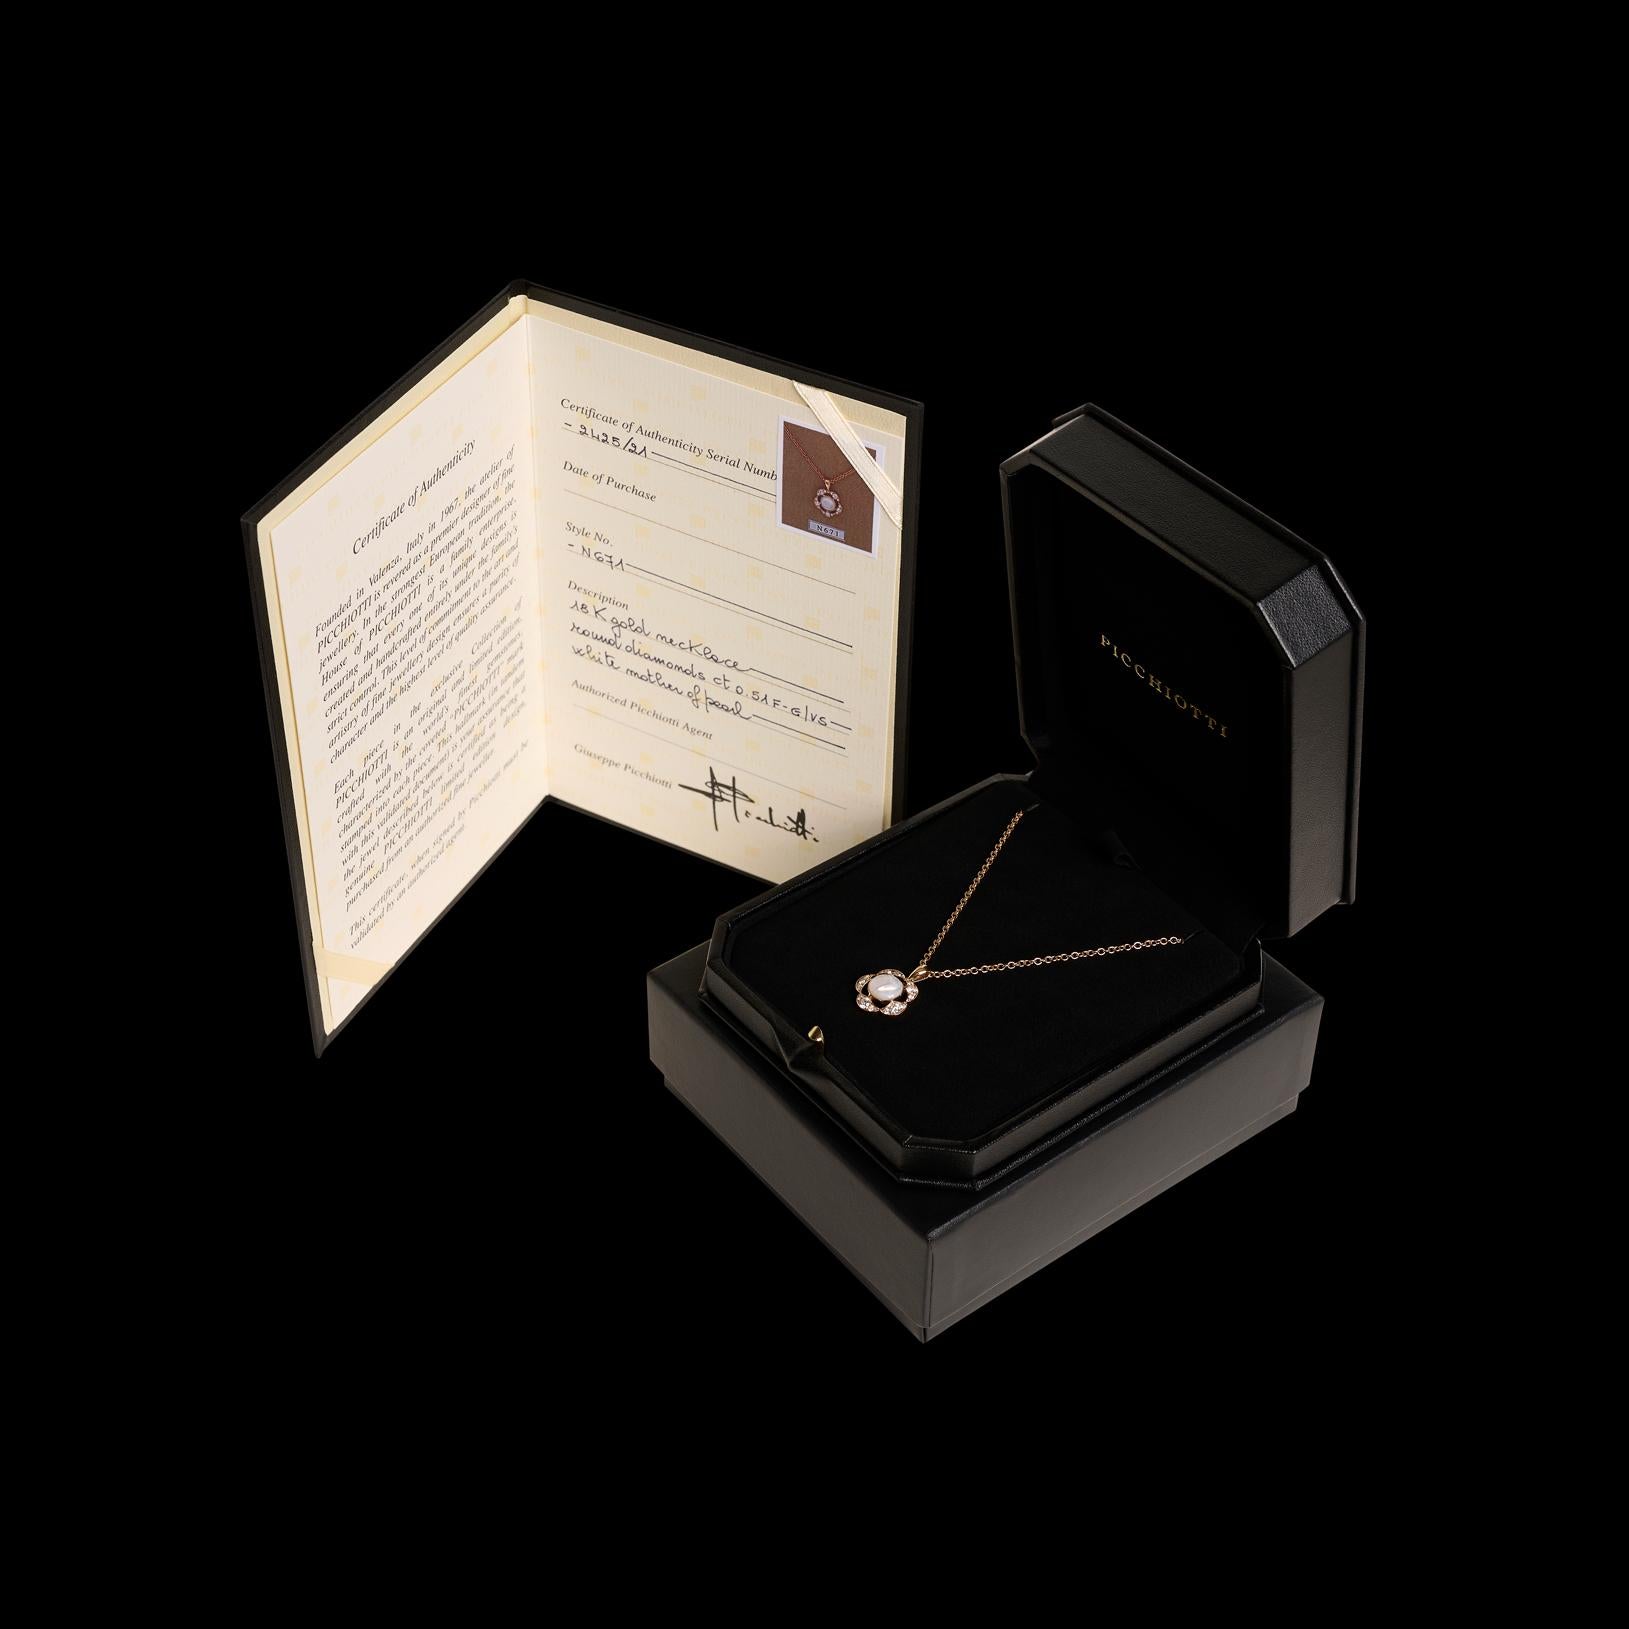 La maison de design italienne exclusive Picchiotti propose ce magnifique collier en or rose 18 carats avec un pendentif unique en nacre et diamants. les 15 diamants blancs étincelants représentent un poids total de 0,51 carat, et la pièce de nacre